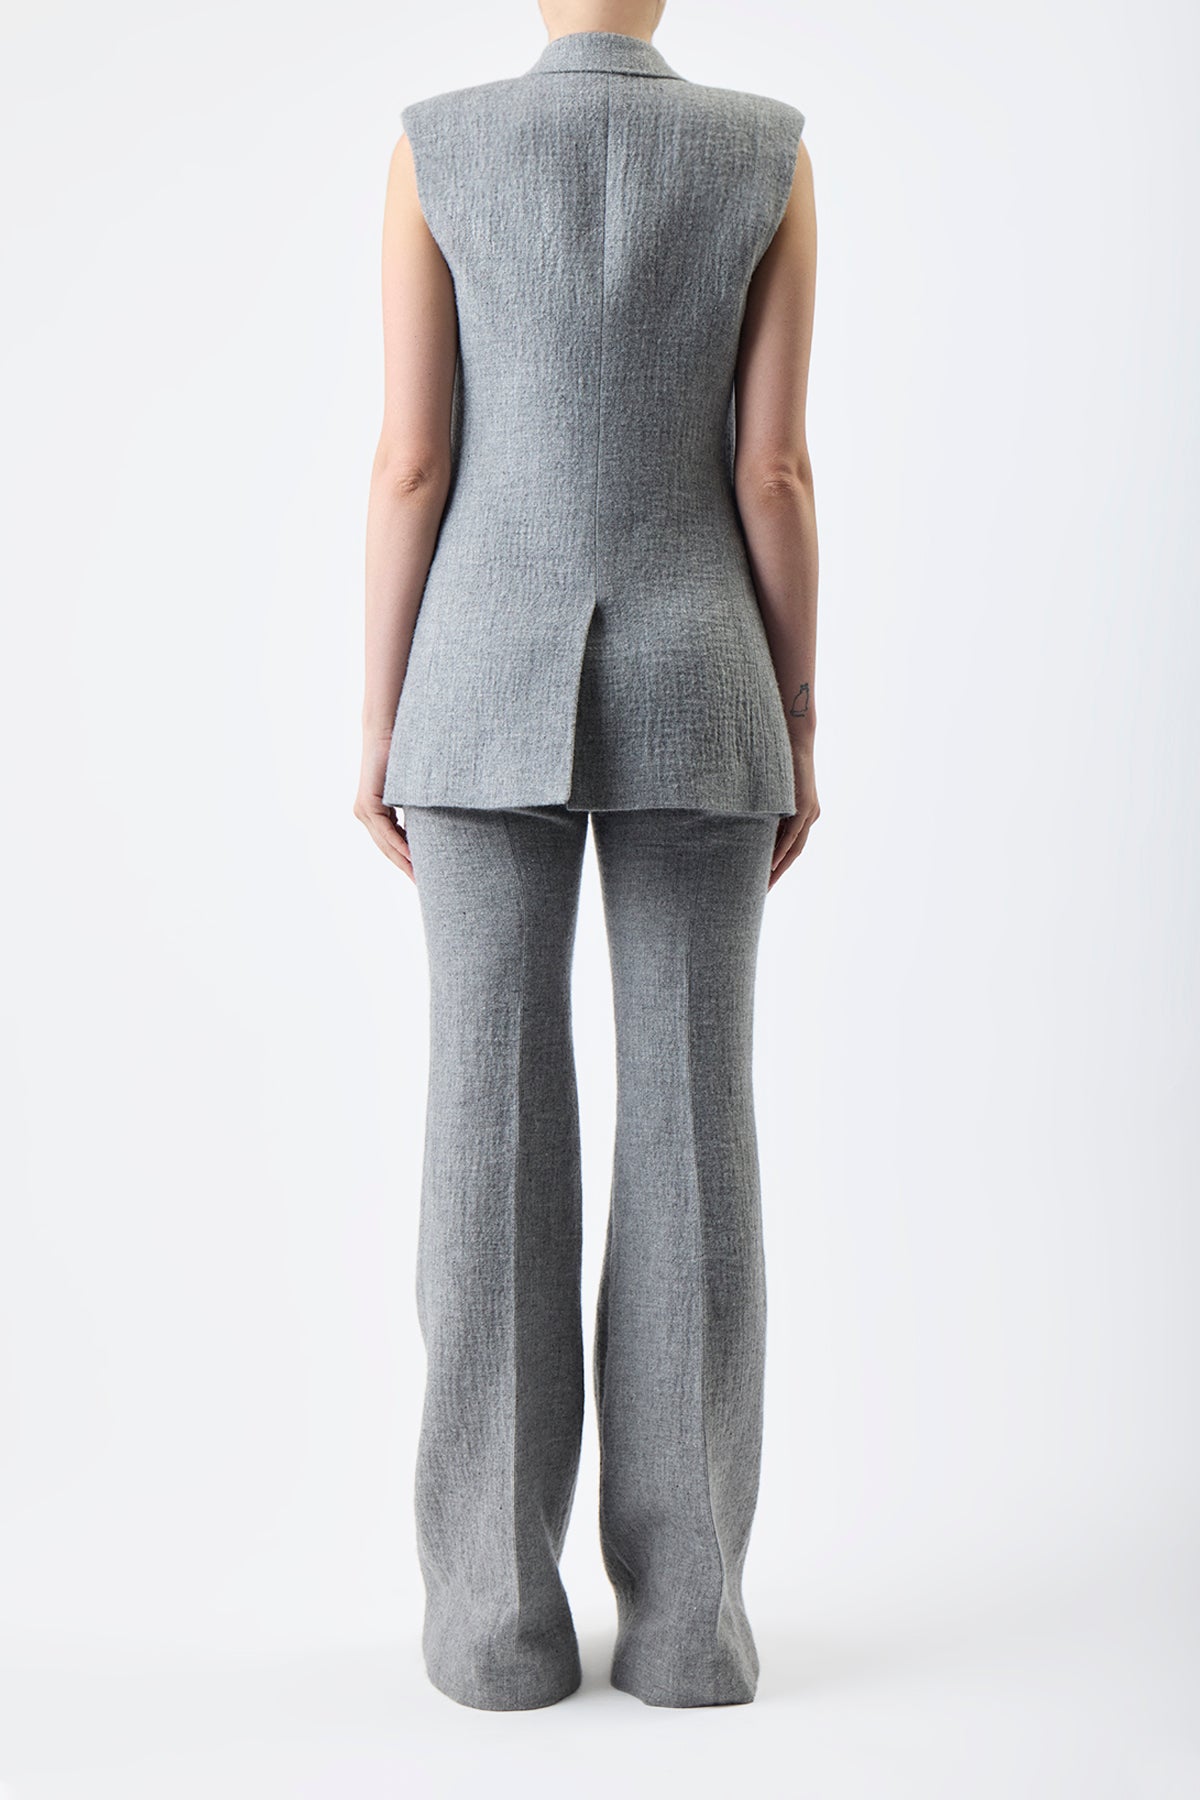 Mayte Vest in Light Grey Melange Cashmere Linen